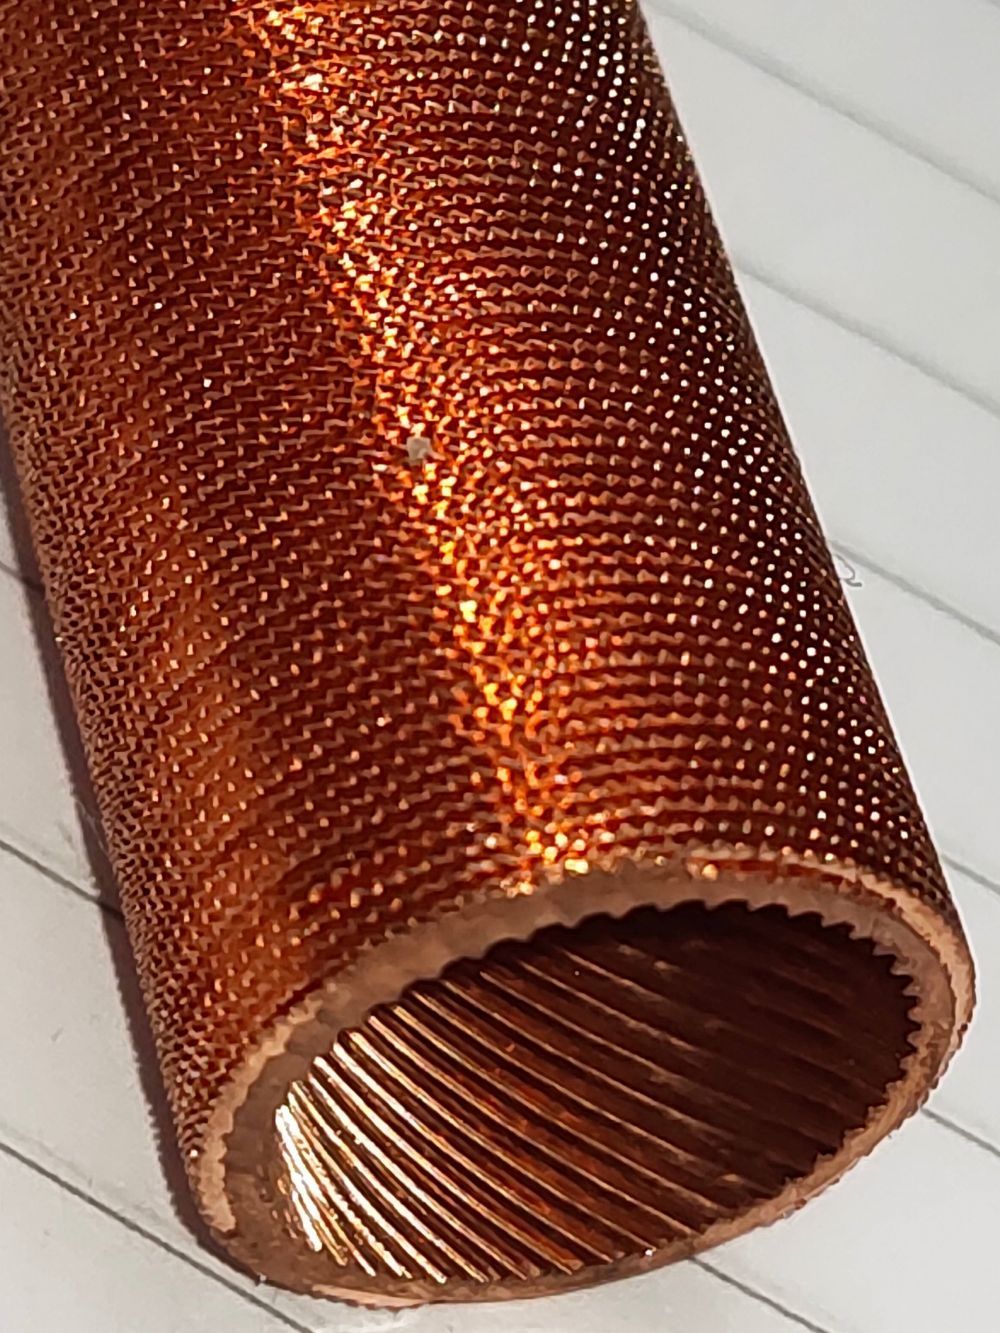 Copper Finned Tube